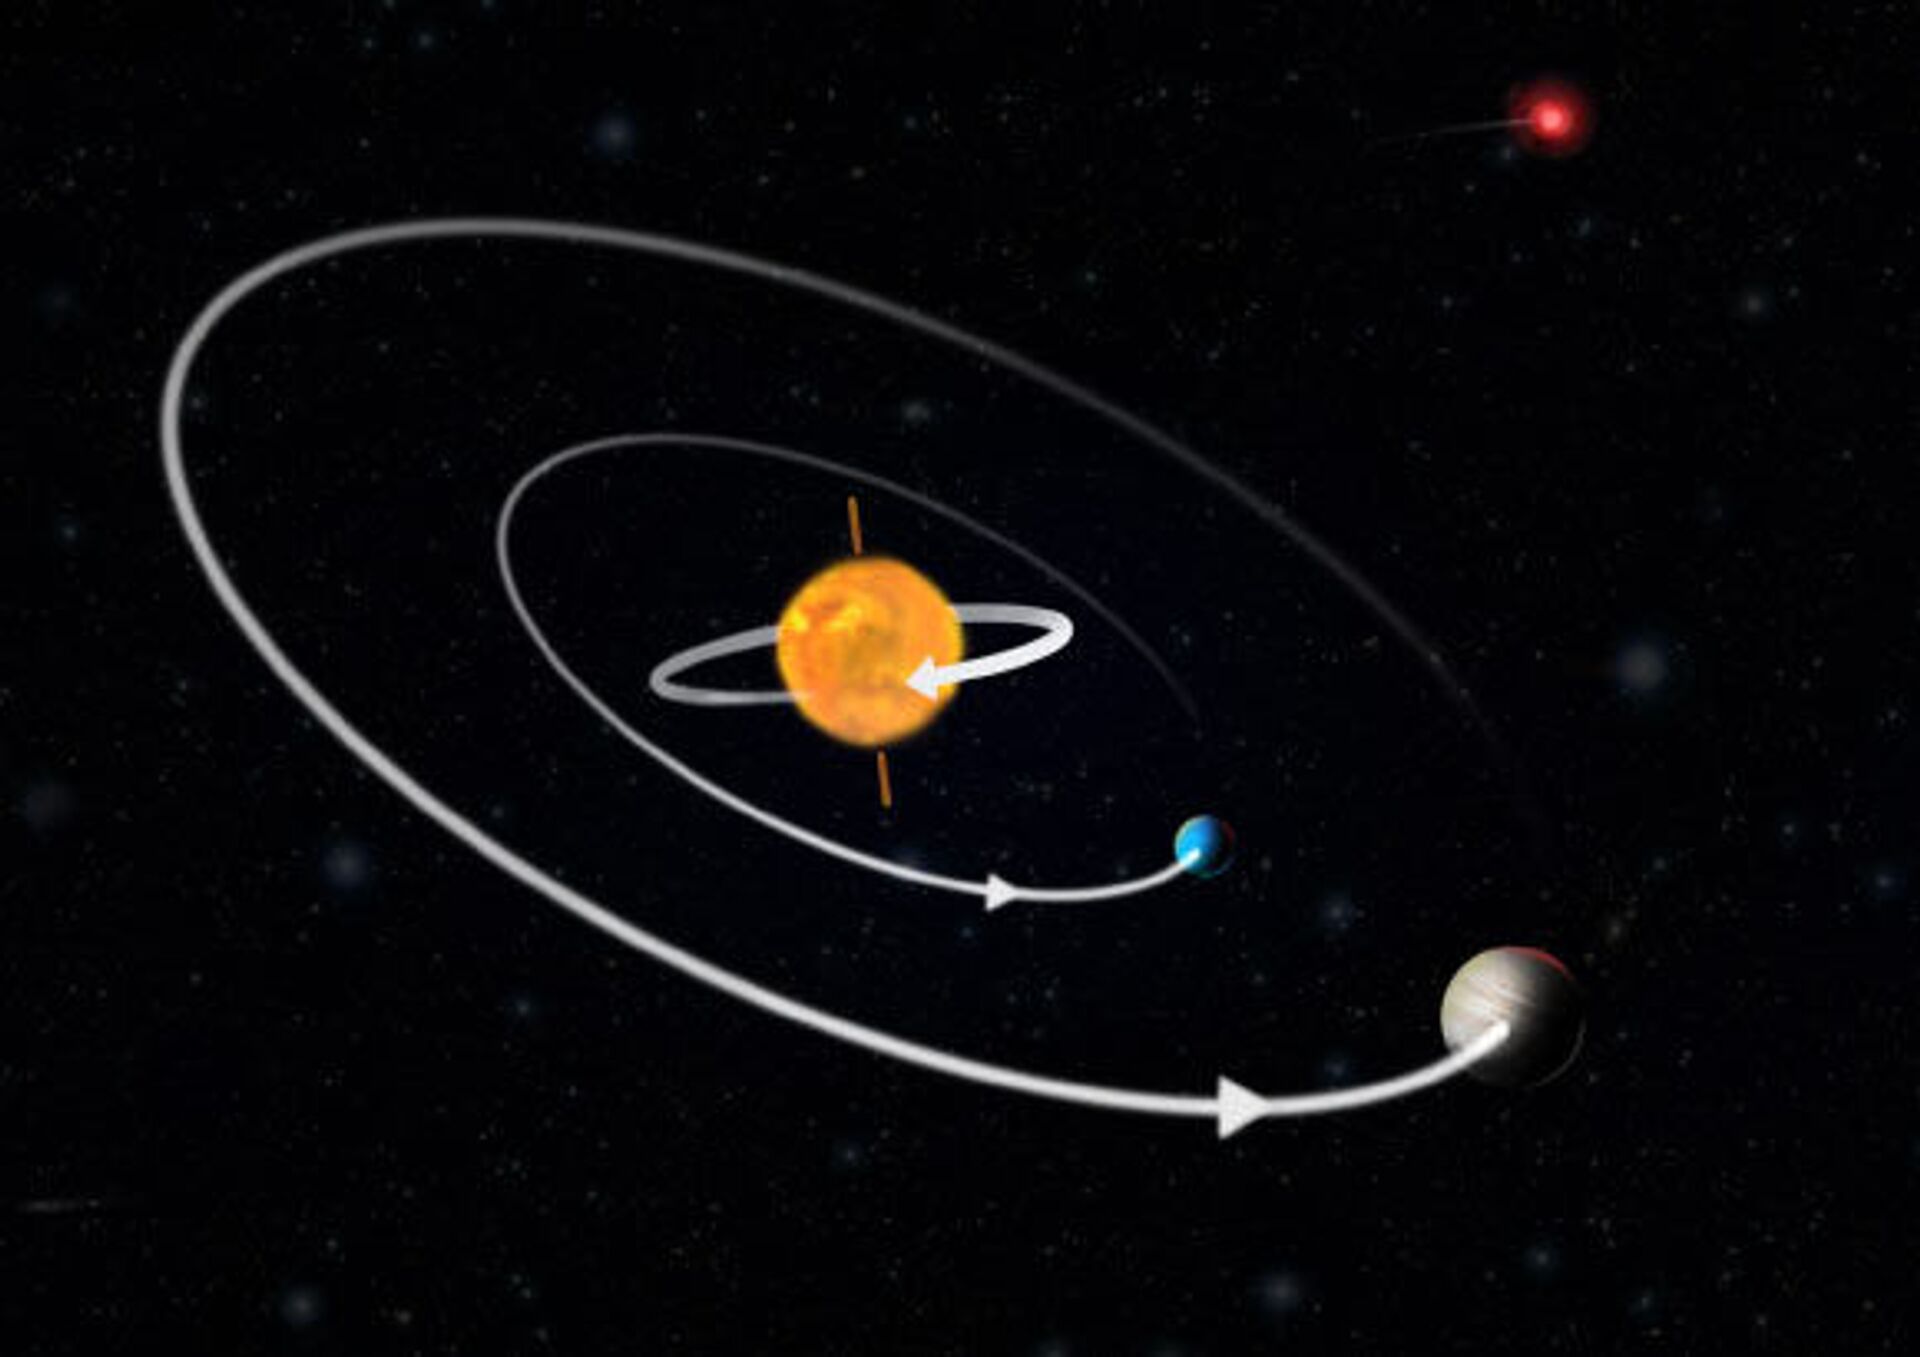 Novo sistema com 'sol' que gira ao contrário instiga astrônomos - Sputnik Brasil, 1920, 18.02.2021